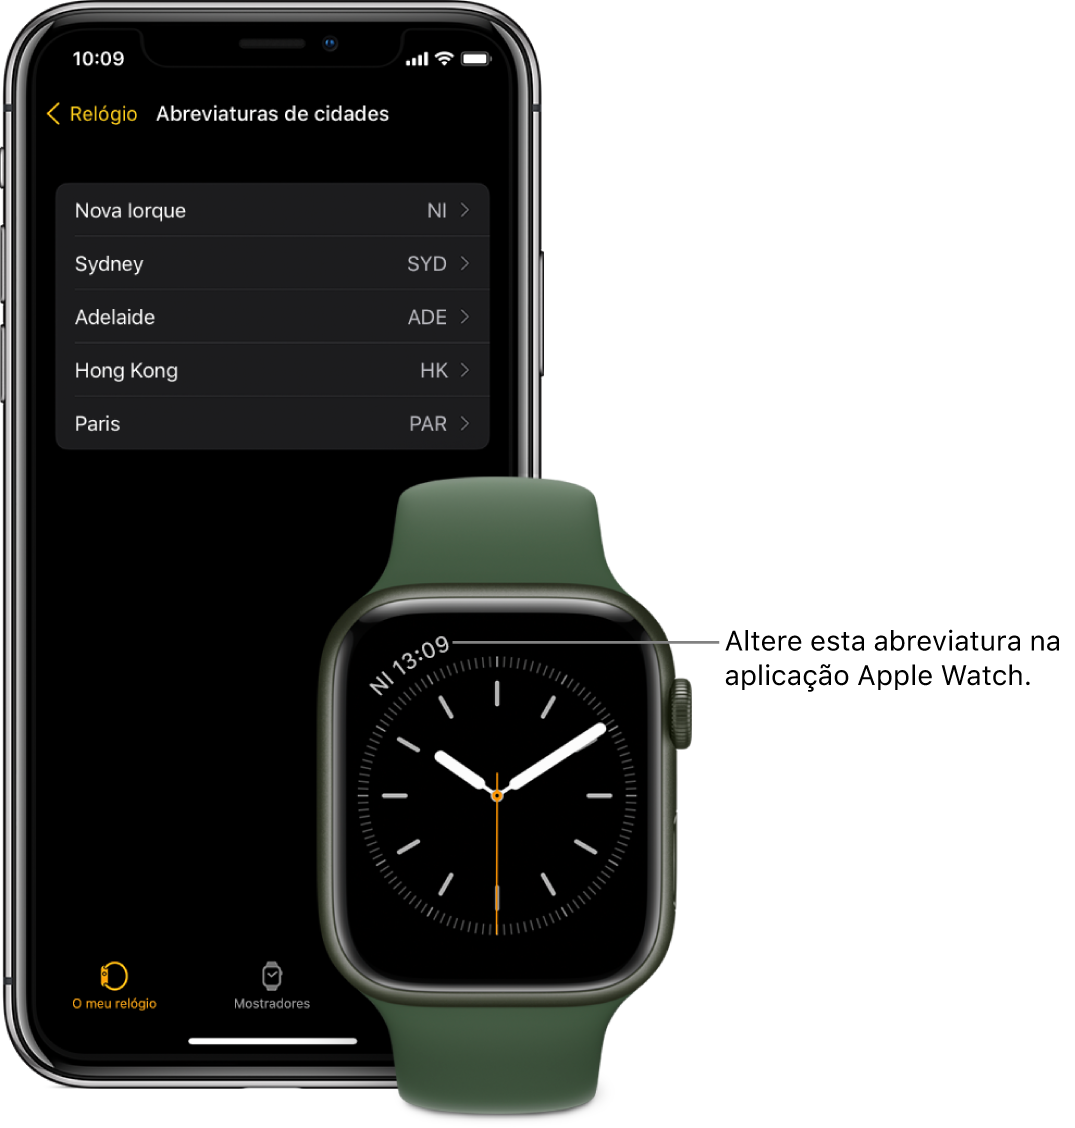 Um iPhone e um Apple Watch, lado a lado. O ecrã do Apple Watch mostra as horas em Nova Iorque, cidade indicada pela abreviatura NYC. O ecrã do iPhone mostra uma lista de cidades nas definições de “Abreviaturas de cidades”, nas definições do Relógio, na aplicação Apple Watch.